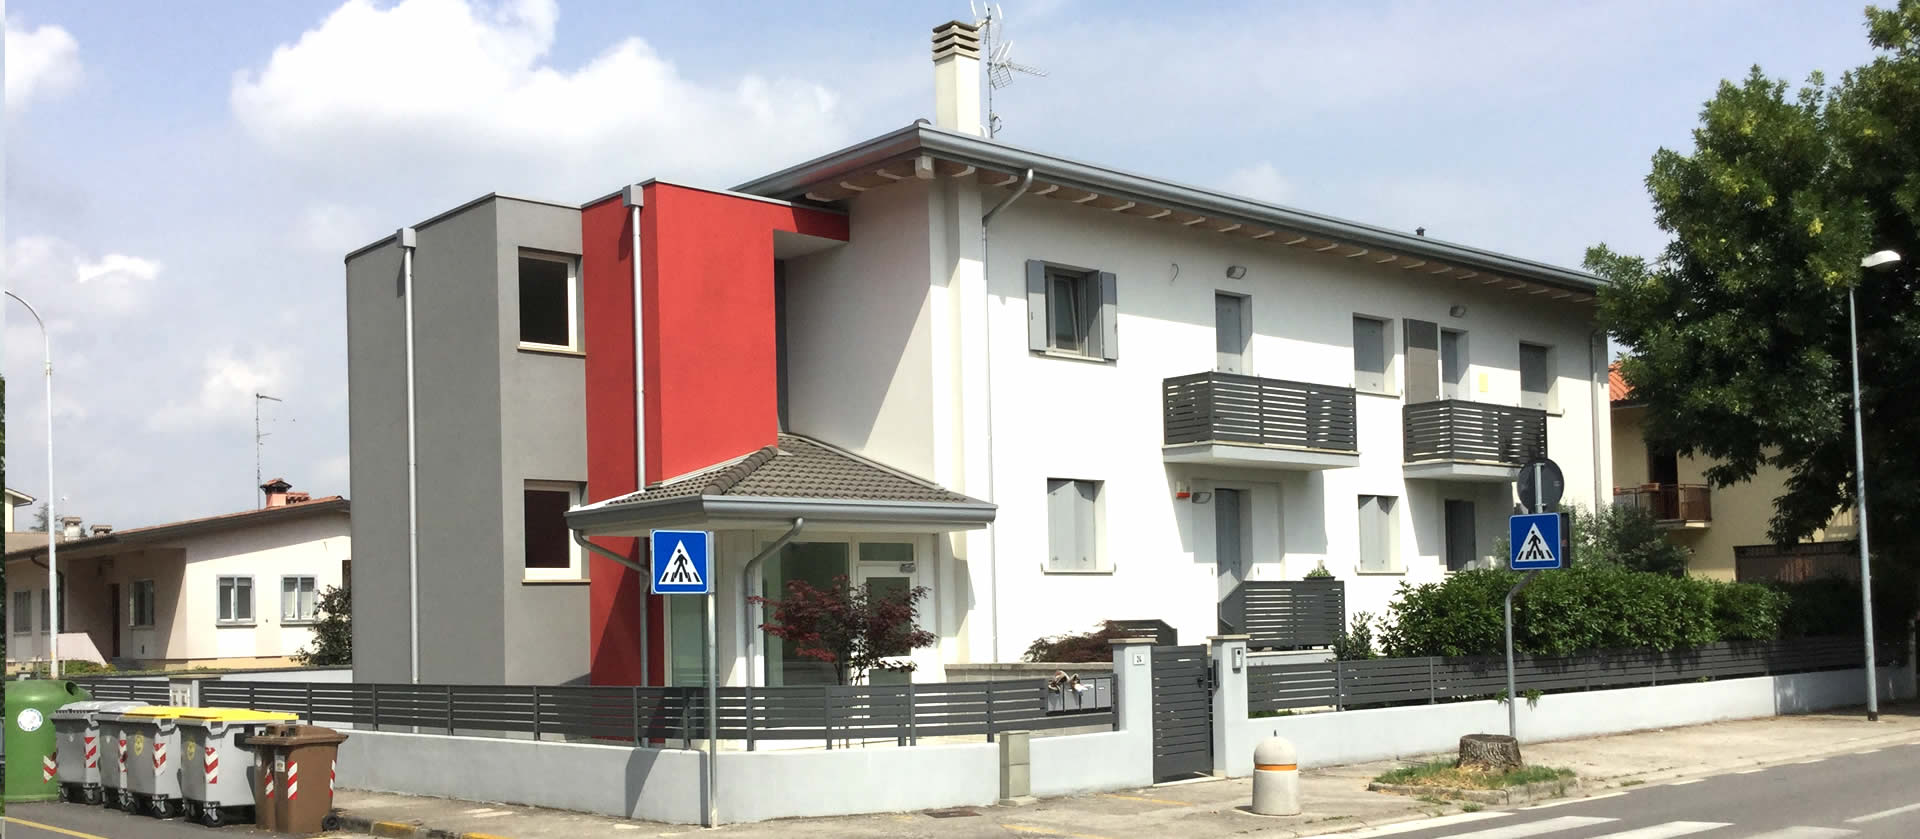 Condominio residenziale  “ex caserma Carabinieri”